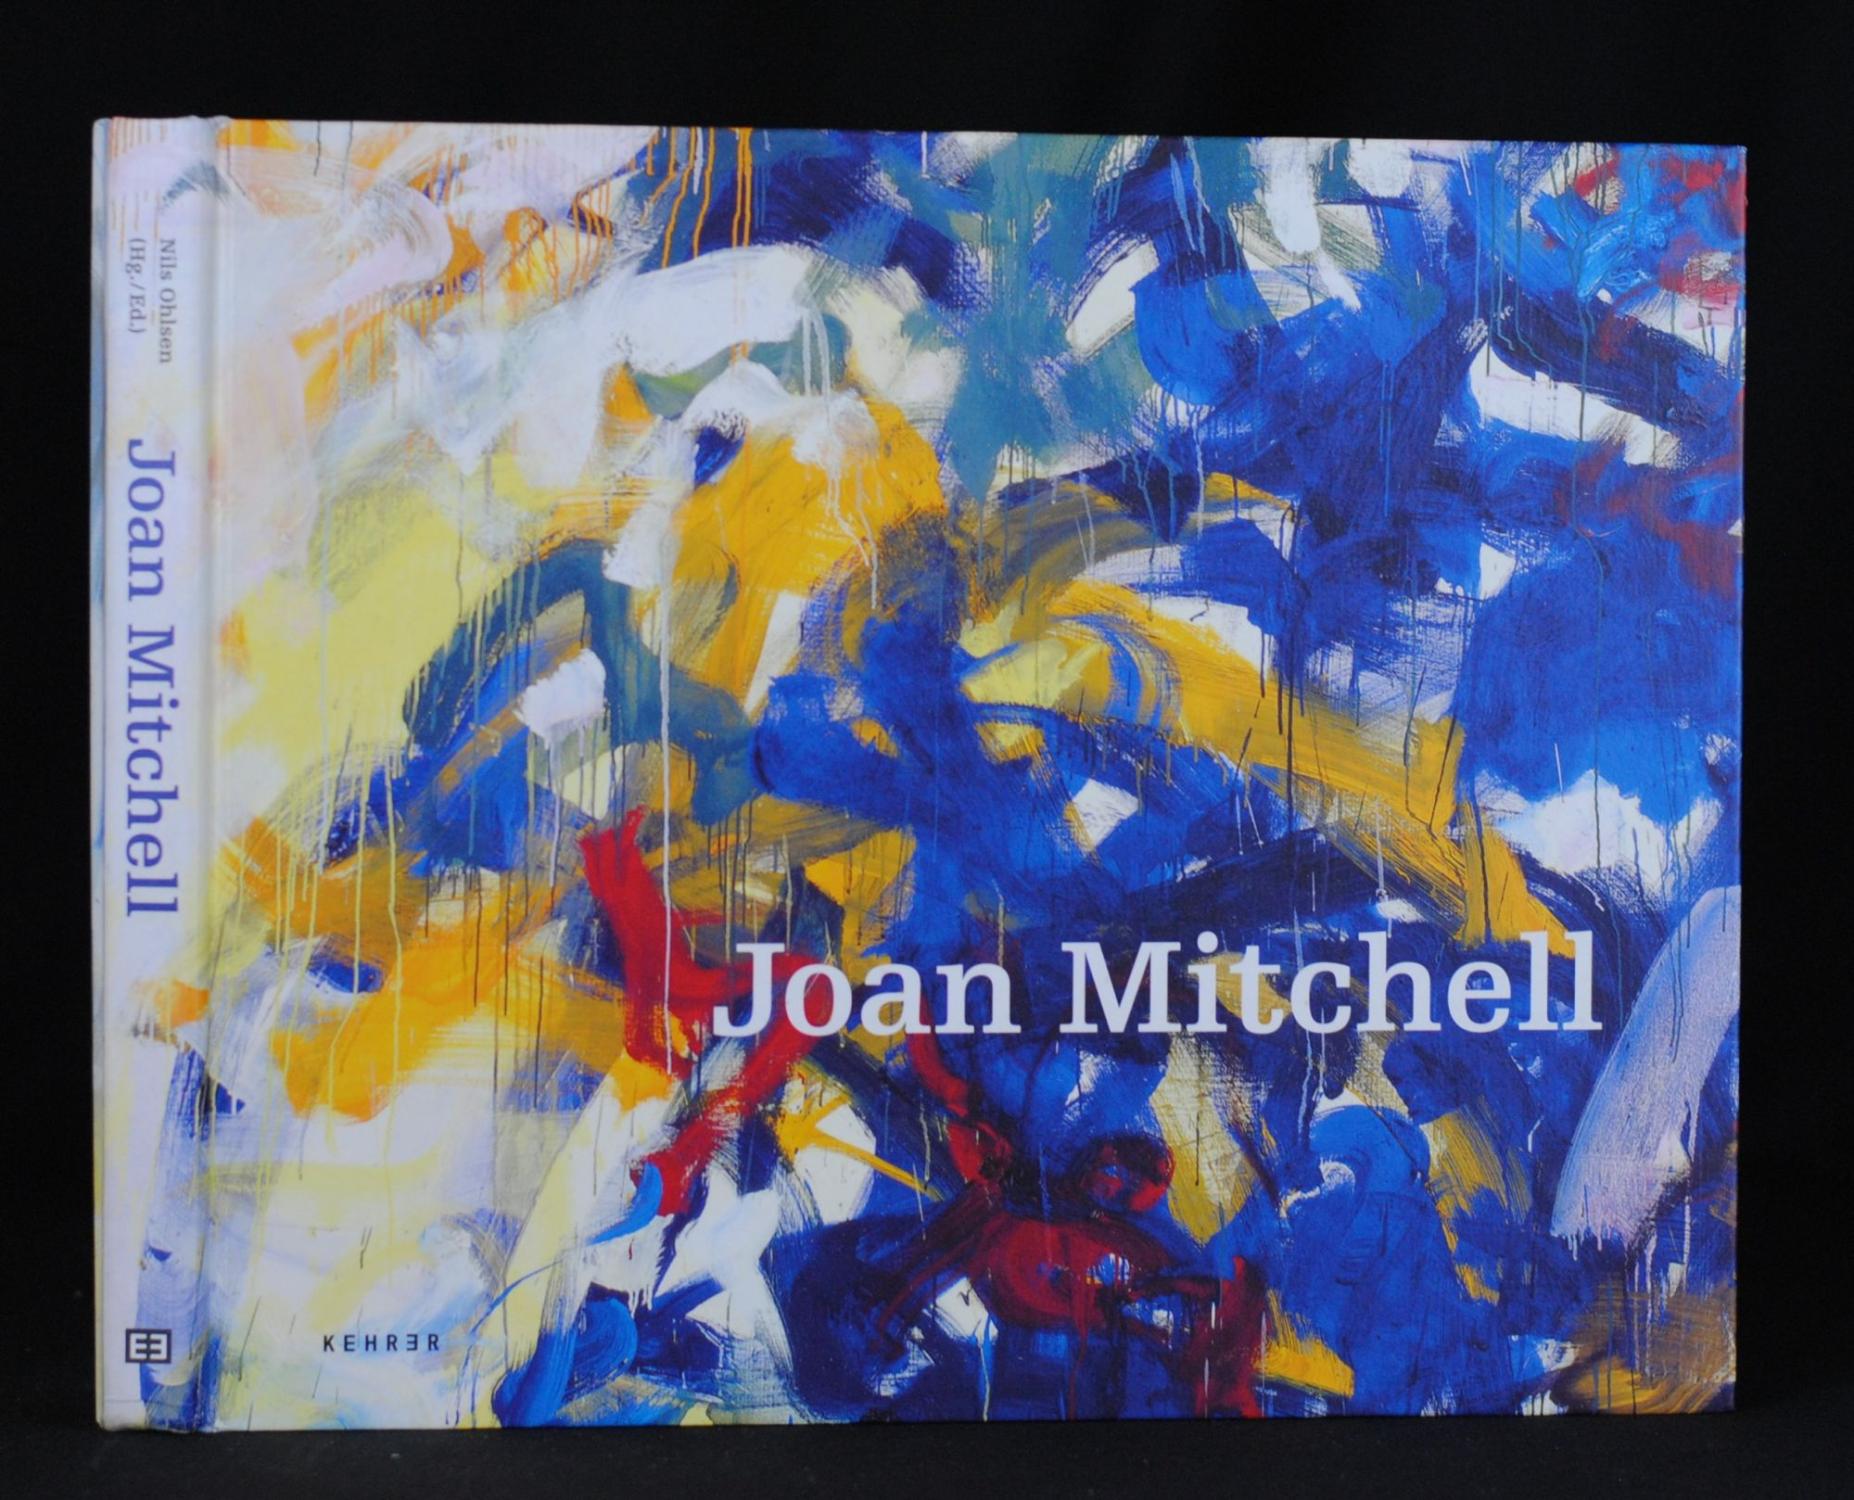 Joan Mitchell - Ohlsen, Nils